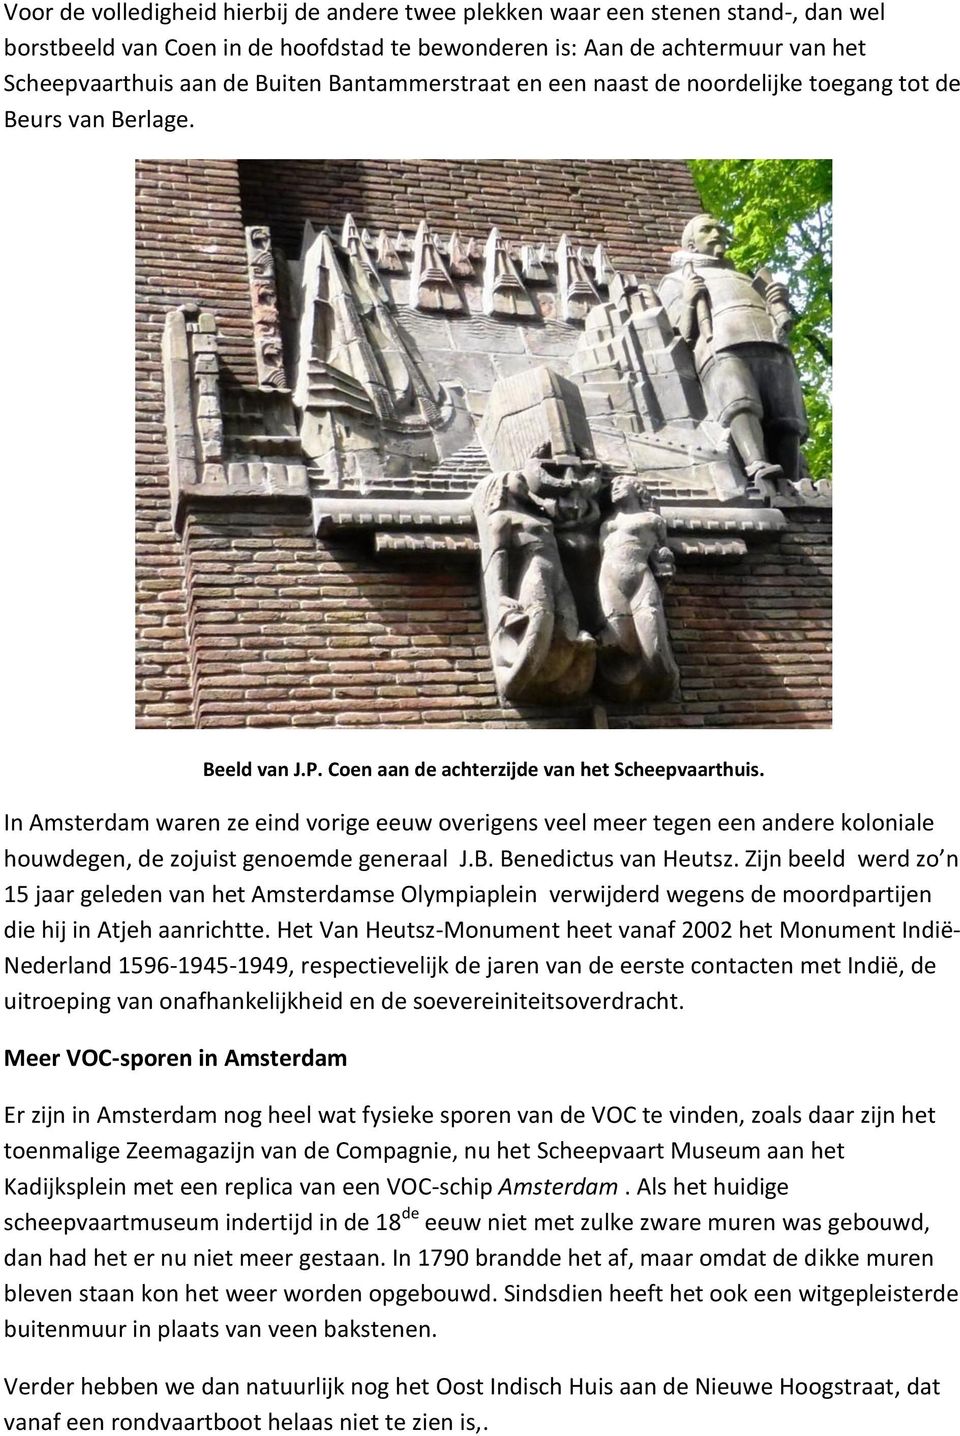 In Amsterdam waren ze eind vorige eeuw overigens veel meer tegen een andere koloniale houwdegen, de zojuist genoemde generaal J.B. Benedictus van Heutsz.